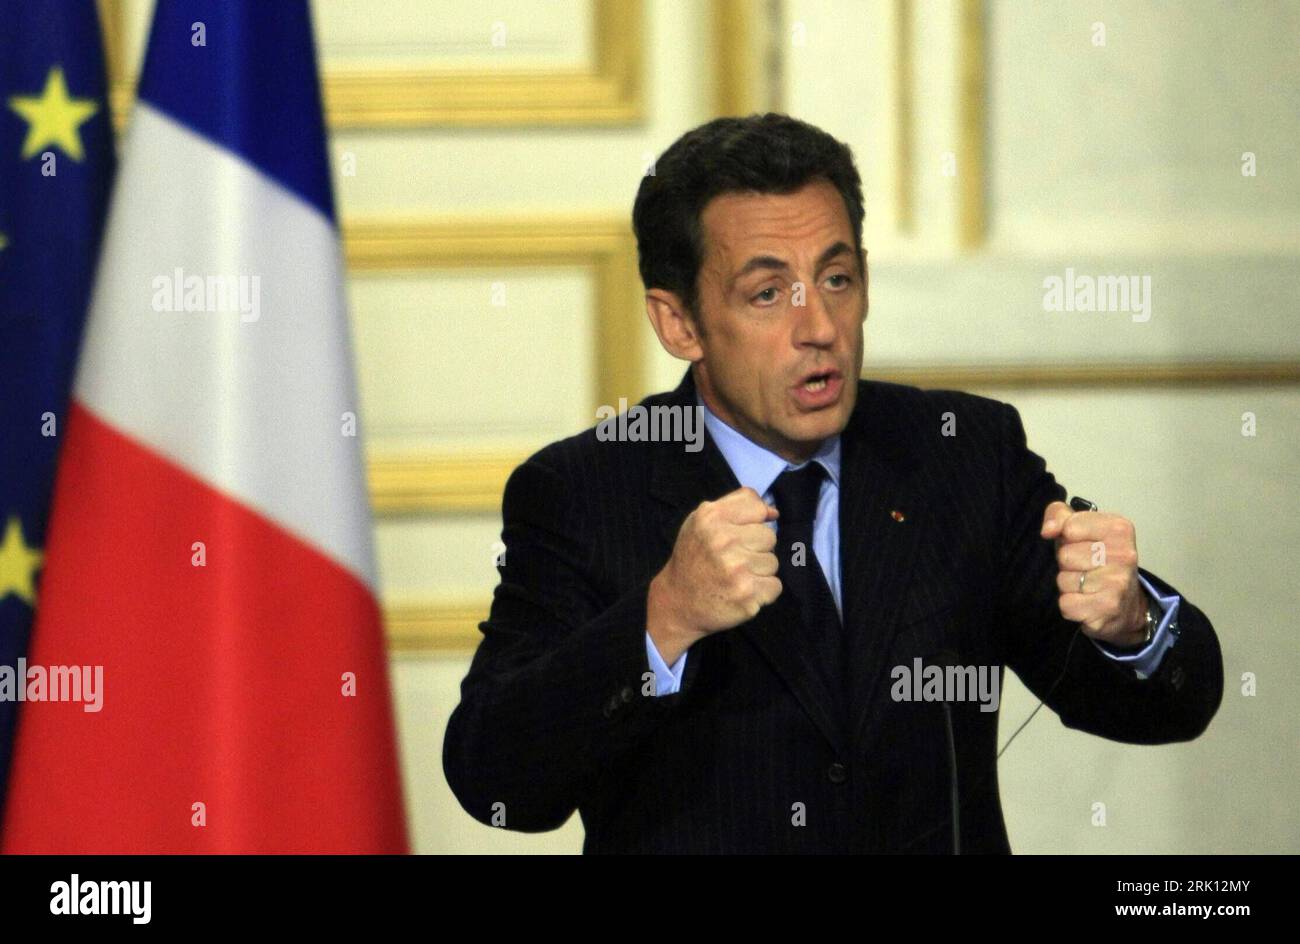 Bildnummer: 52839305  Datum: 08.01.2009  Copyright: imago/Xinhua Präsident Nicolas Sarkozy (Frankreich) verkündet die Einberufung eines Vortreffens der europäischen Mitglieder zum G20-Gipfeltreffen während einer Pressekonferenz in Paris - PUBLICATIONxNOTxINxCHN, Personen , premiumd; 2009, Paris, Politik, Pressekonferenz, Pressetermin; , quer, Kbdig, Einzelbild, close, Randbild, People    Bildnummer 52839305 Date 08 01 2009 Copyright Imago XINHUA President Nicolas Sarkozy France announced the Draft a Excellence the European Members to G20 Summit during a Press conference in Paris PUBLICATIONxNO Stock Photo